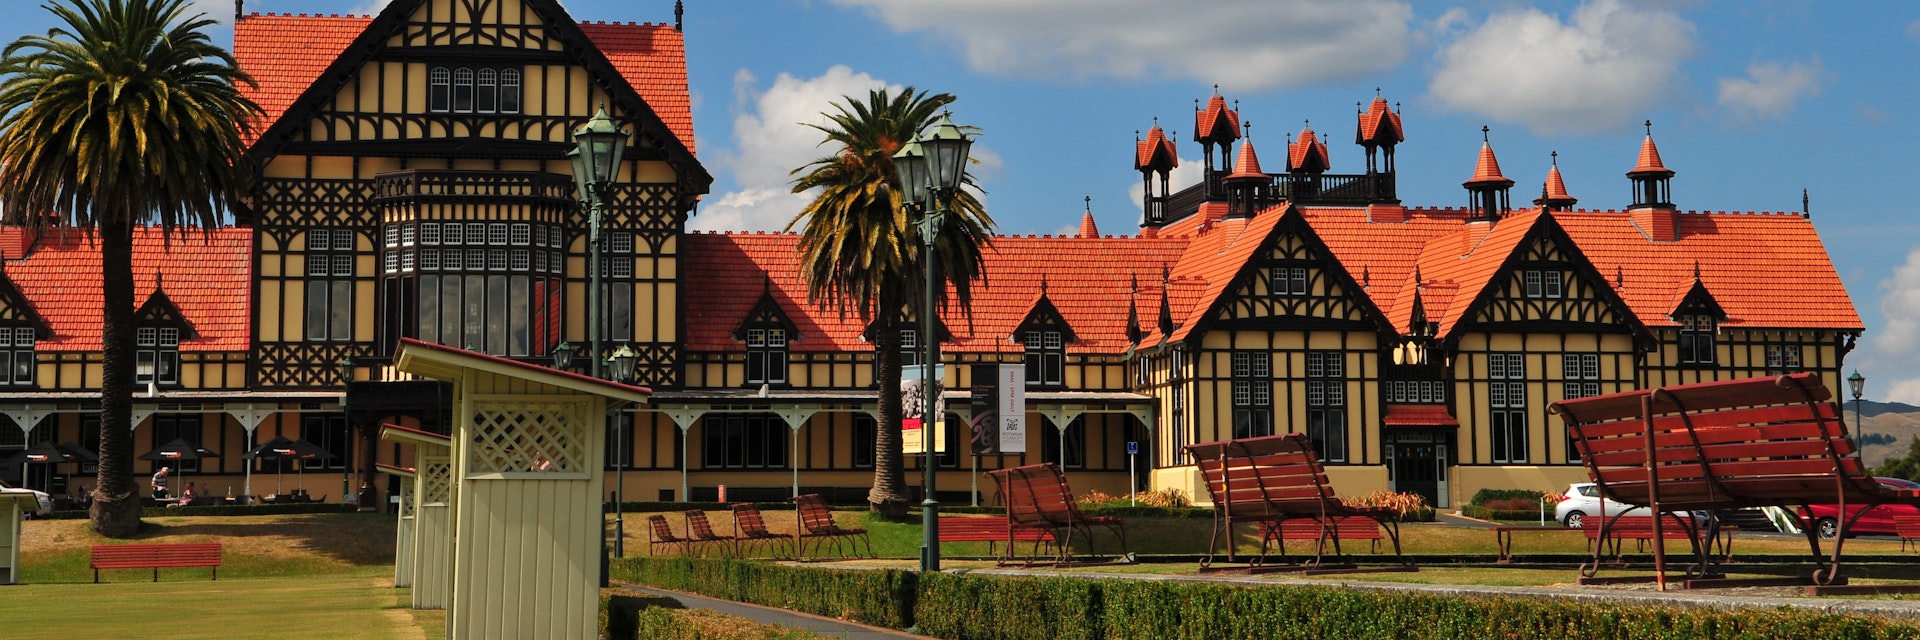 Museum of Rotorua